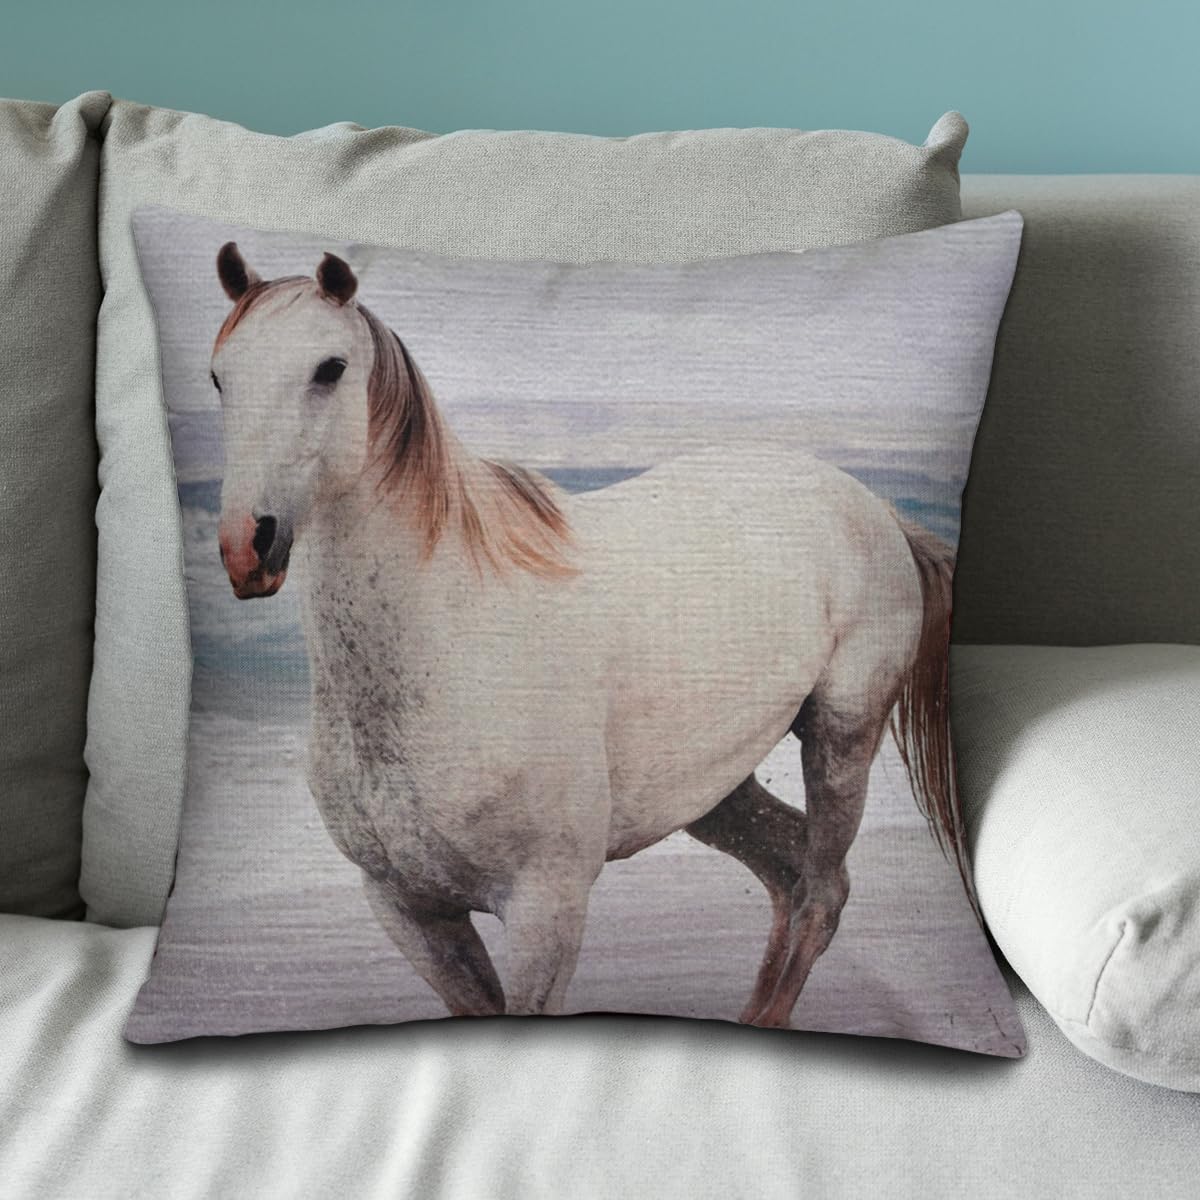 Horse Printed Design Throw Pillow Covers - Decozen